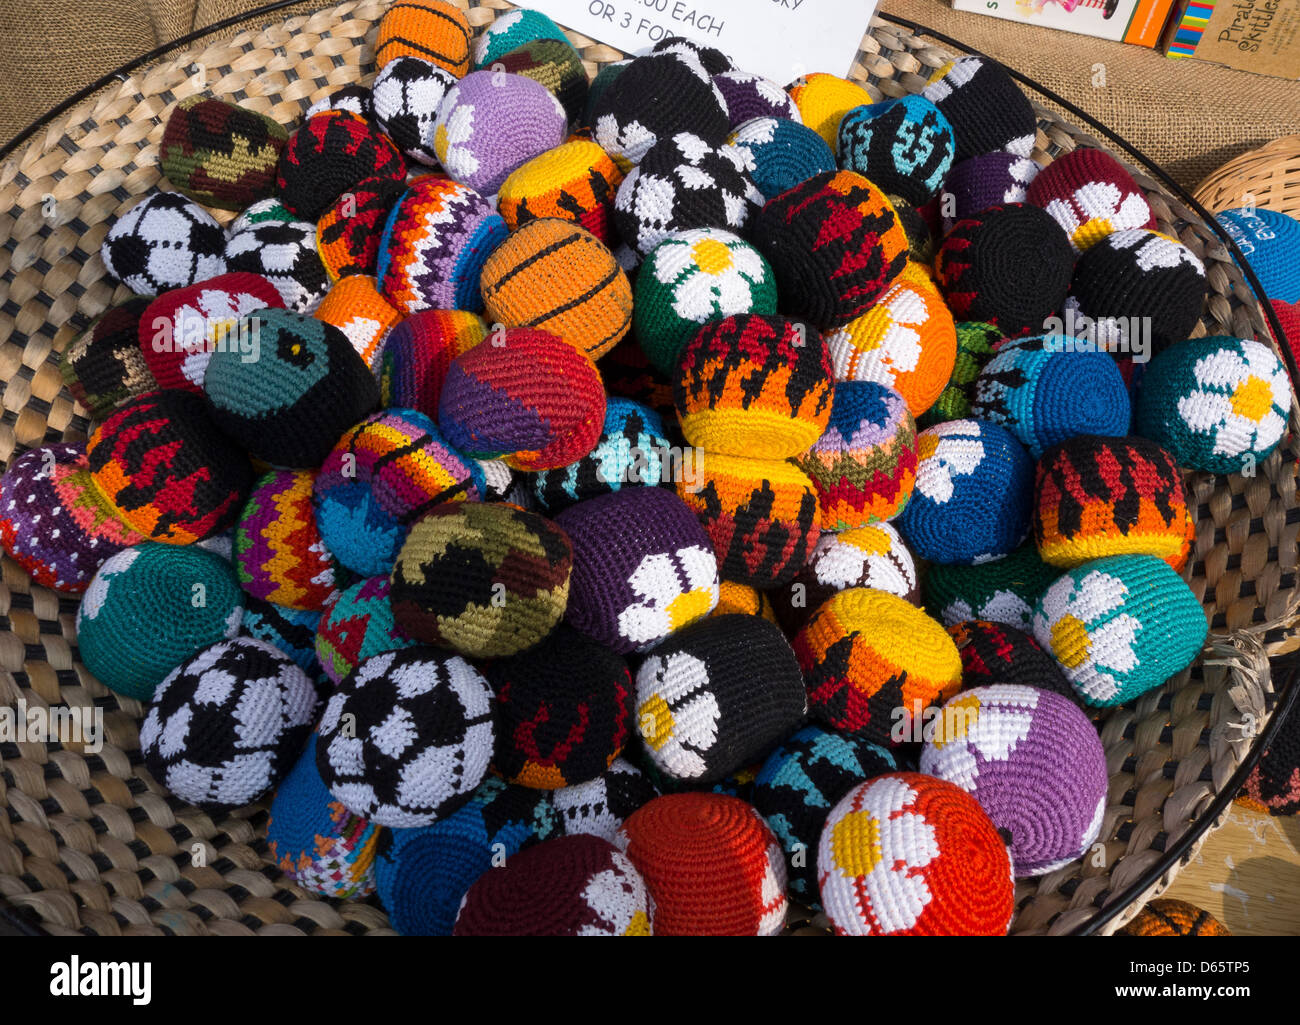 Maglia fantasia juggling balls in ciotola di stallo del mercato Foto Stock